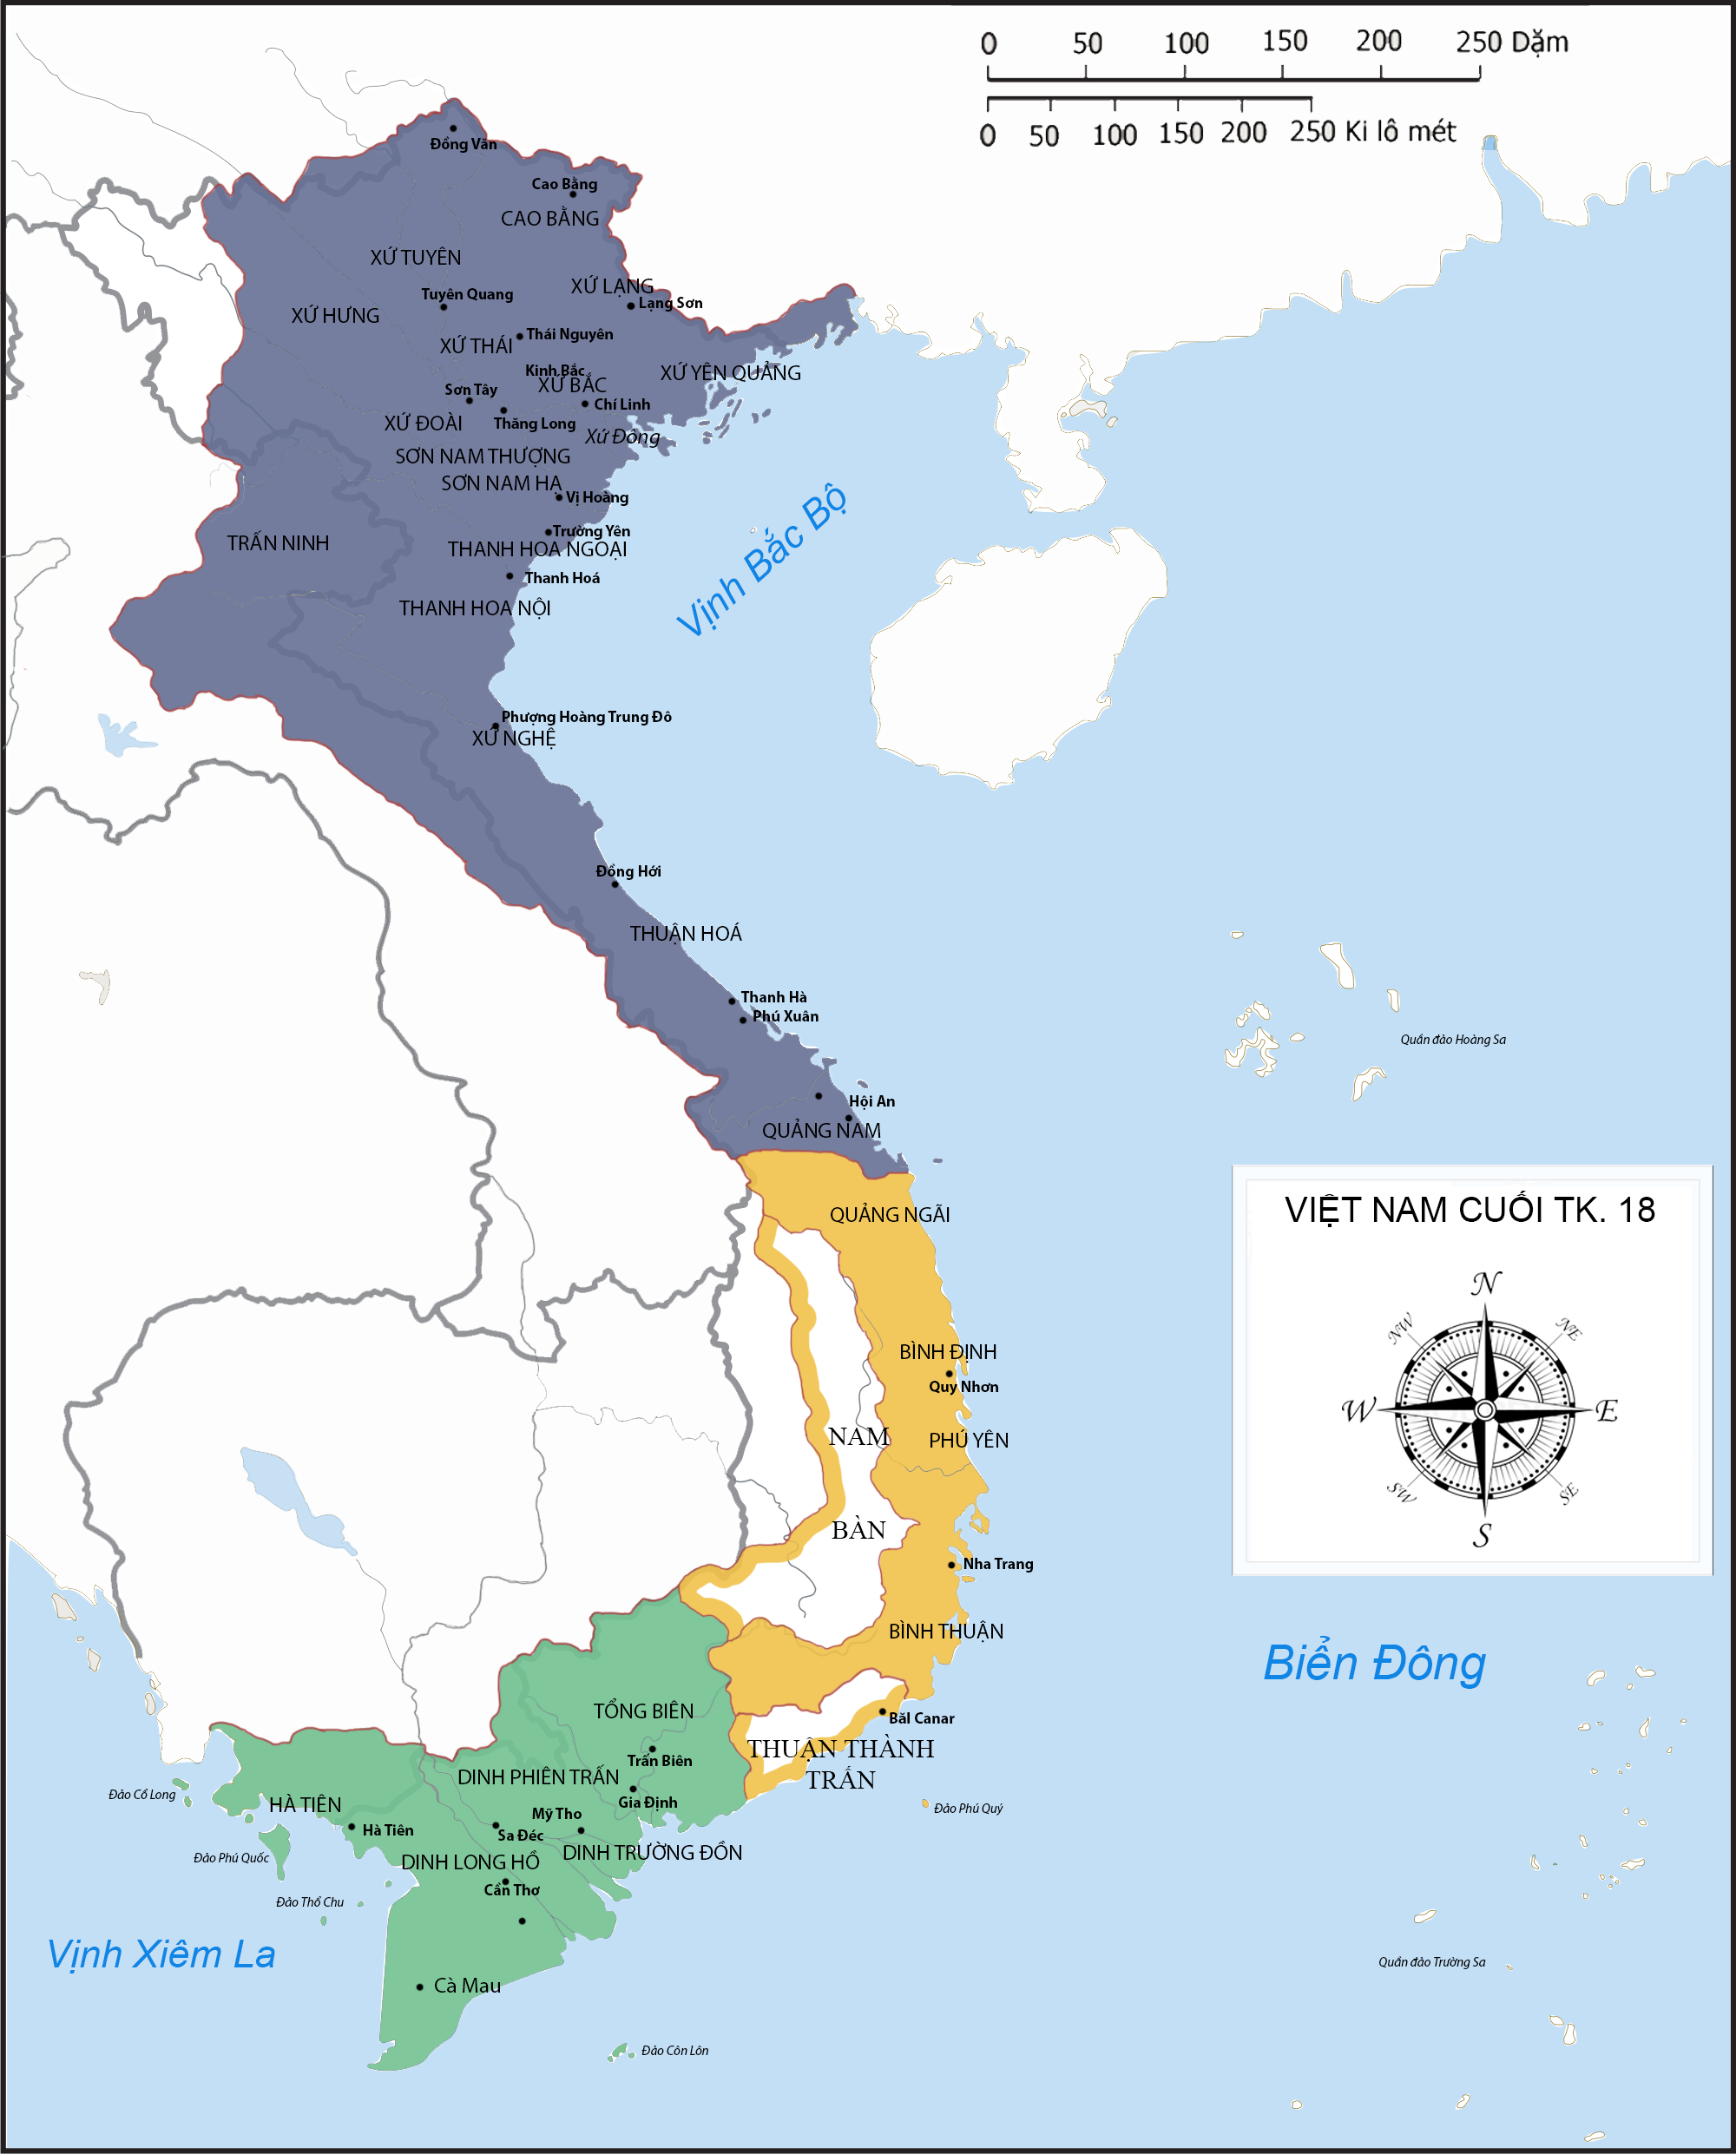 Tây Sơn wars - Wikipedia